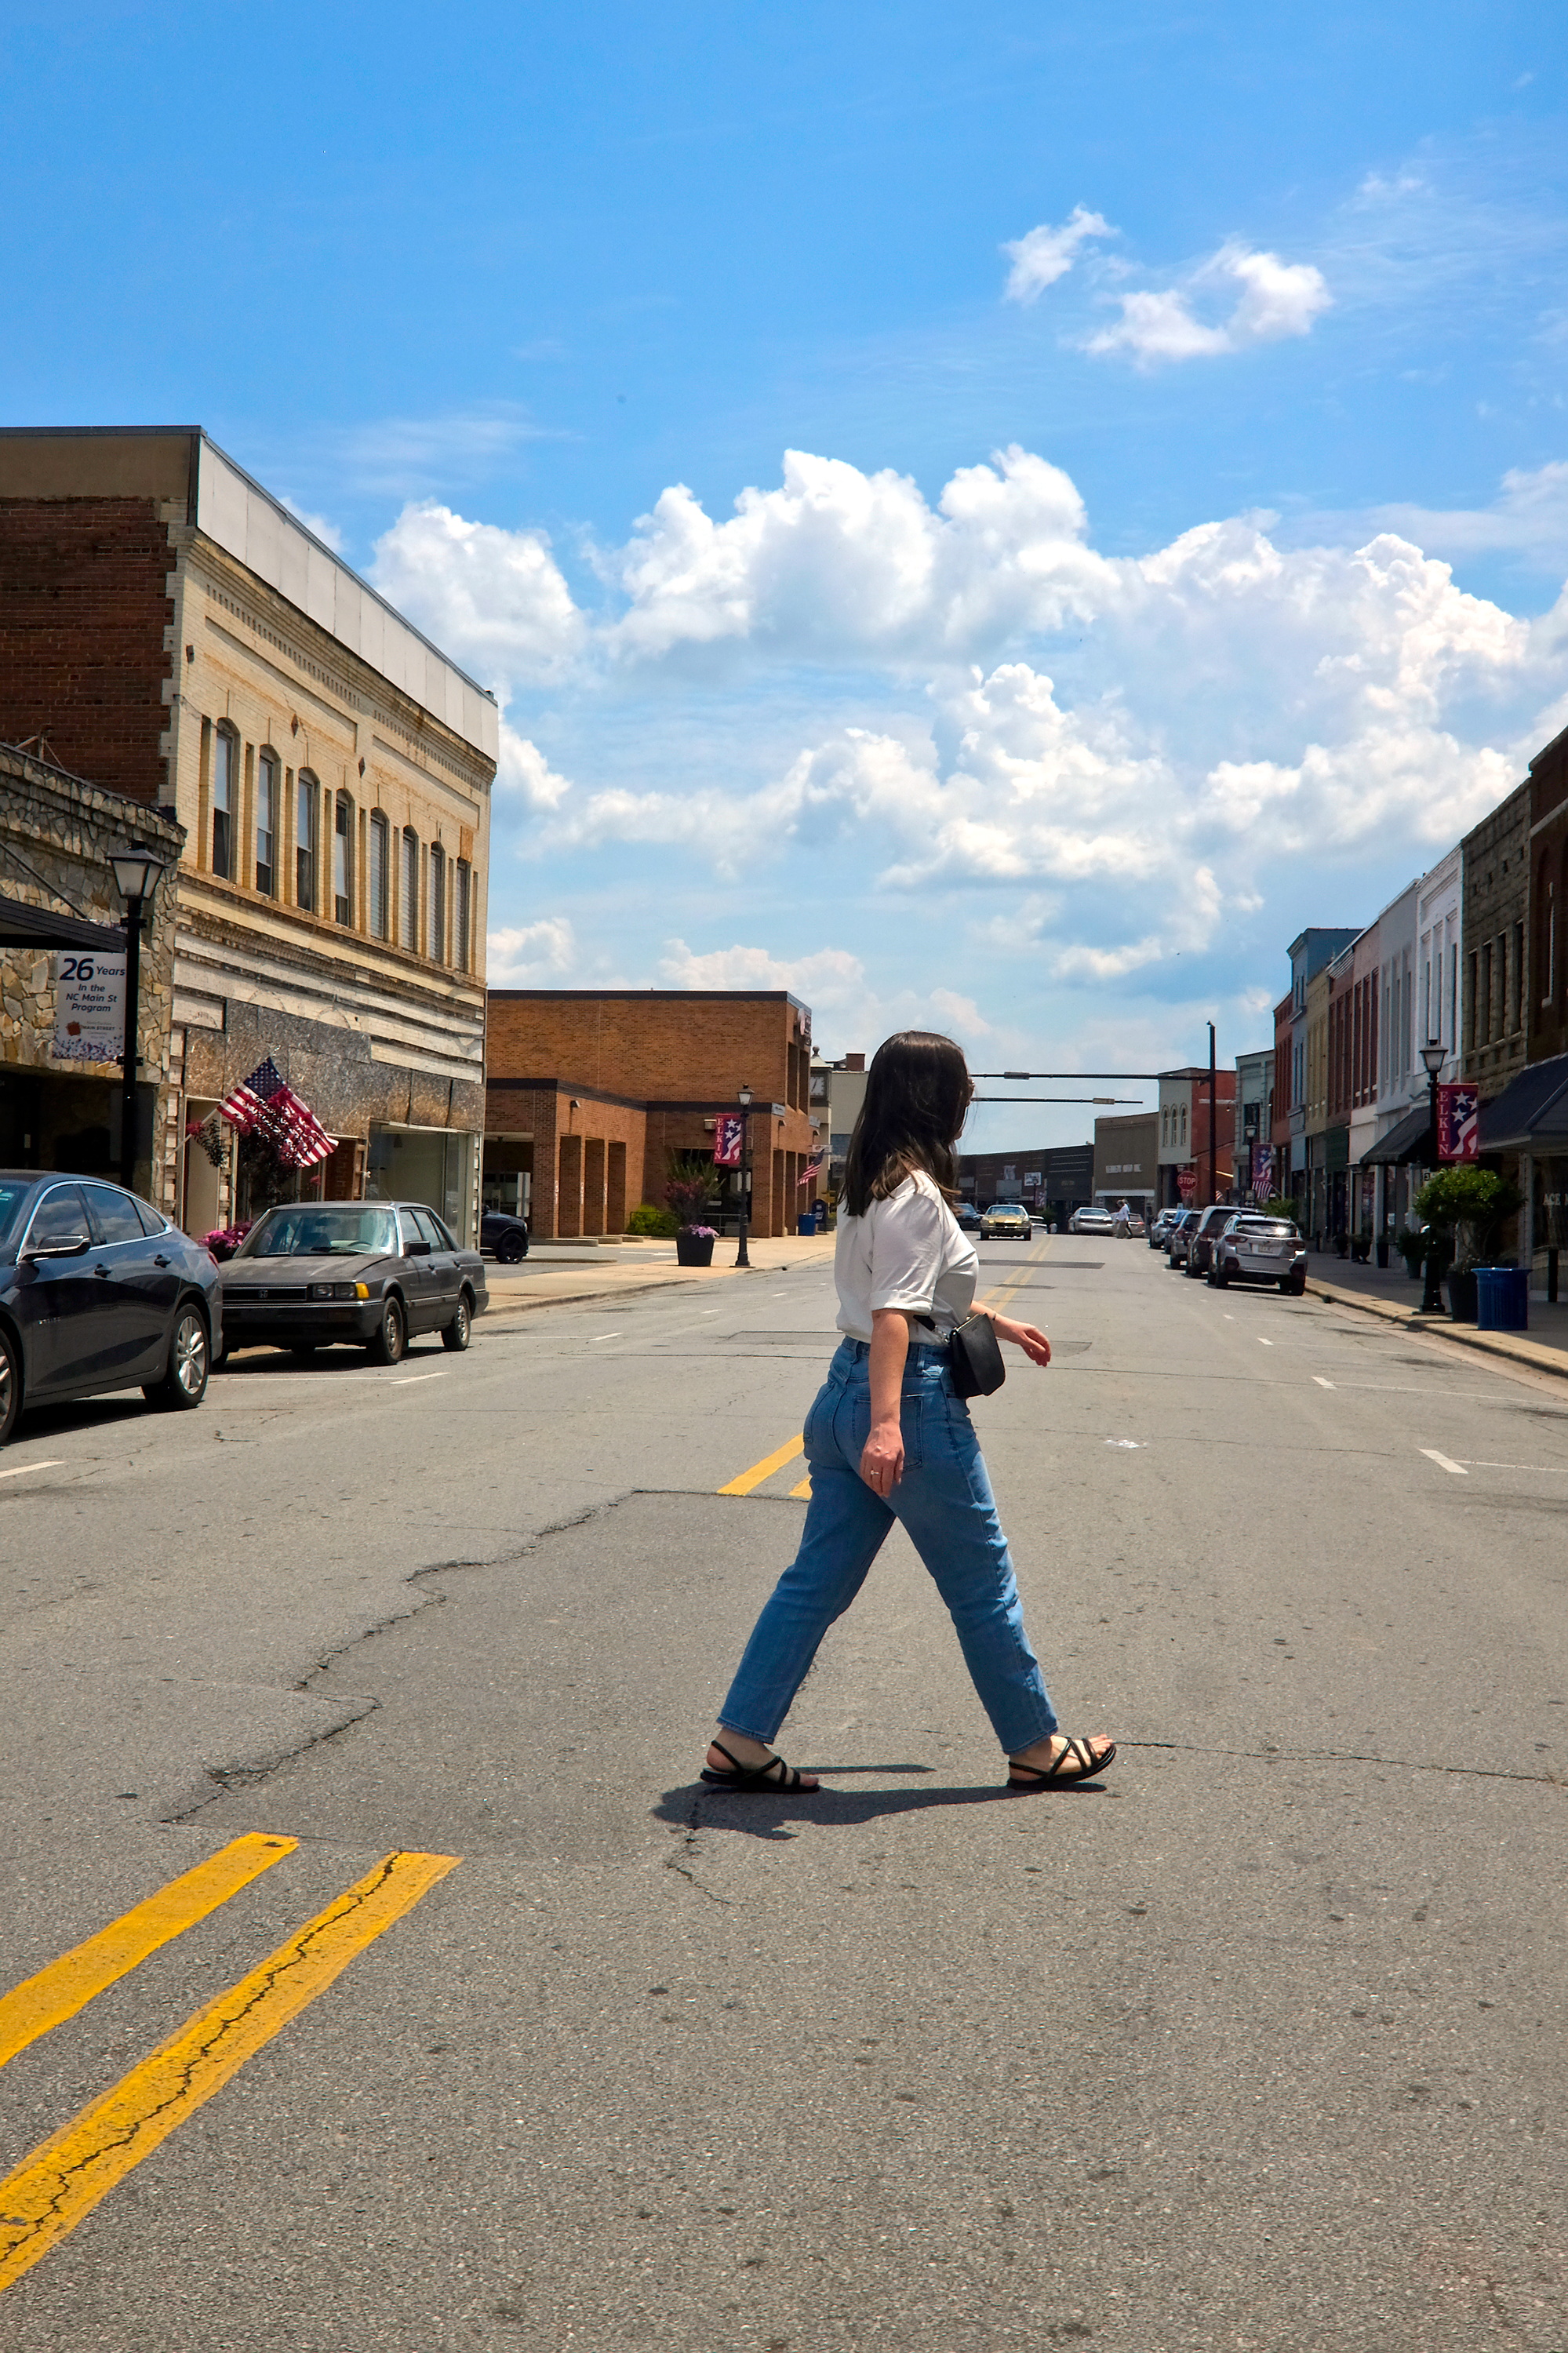 Alyssa crosses Main Street in downtown Elkin